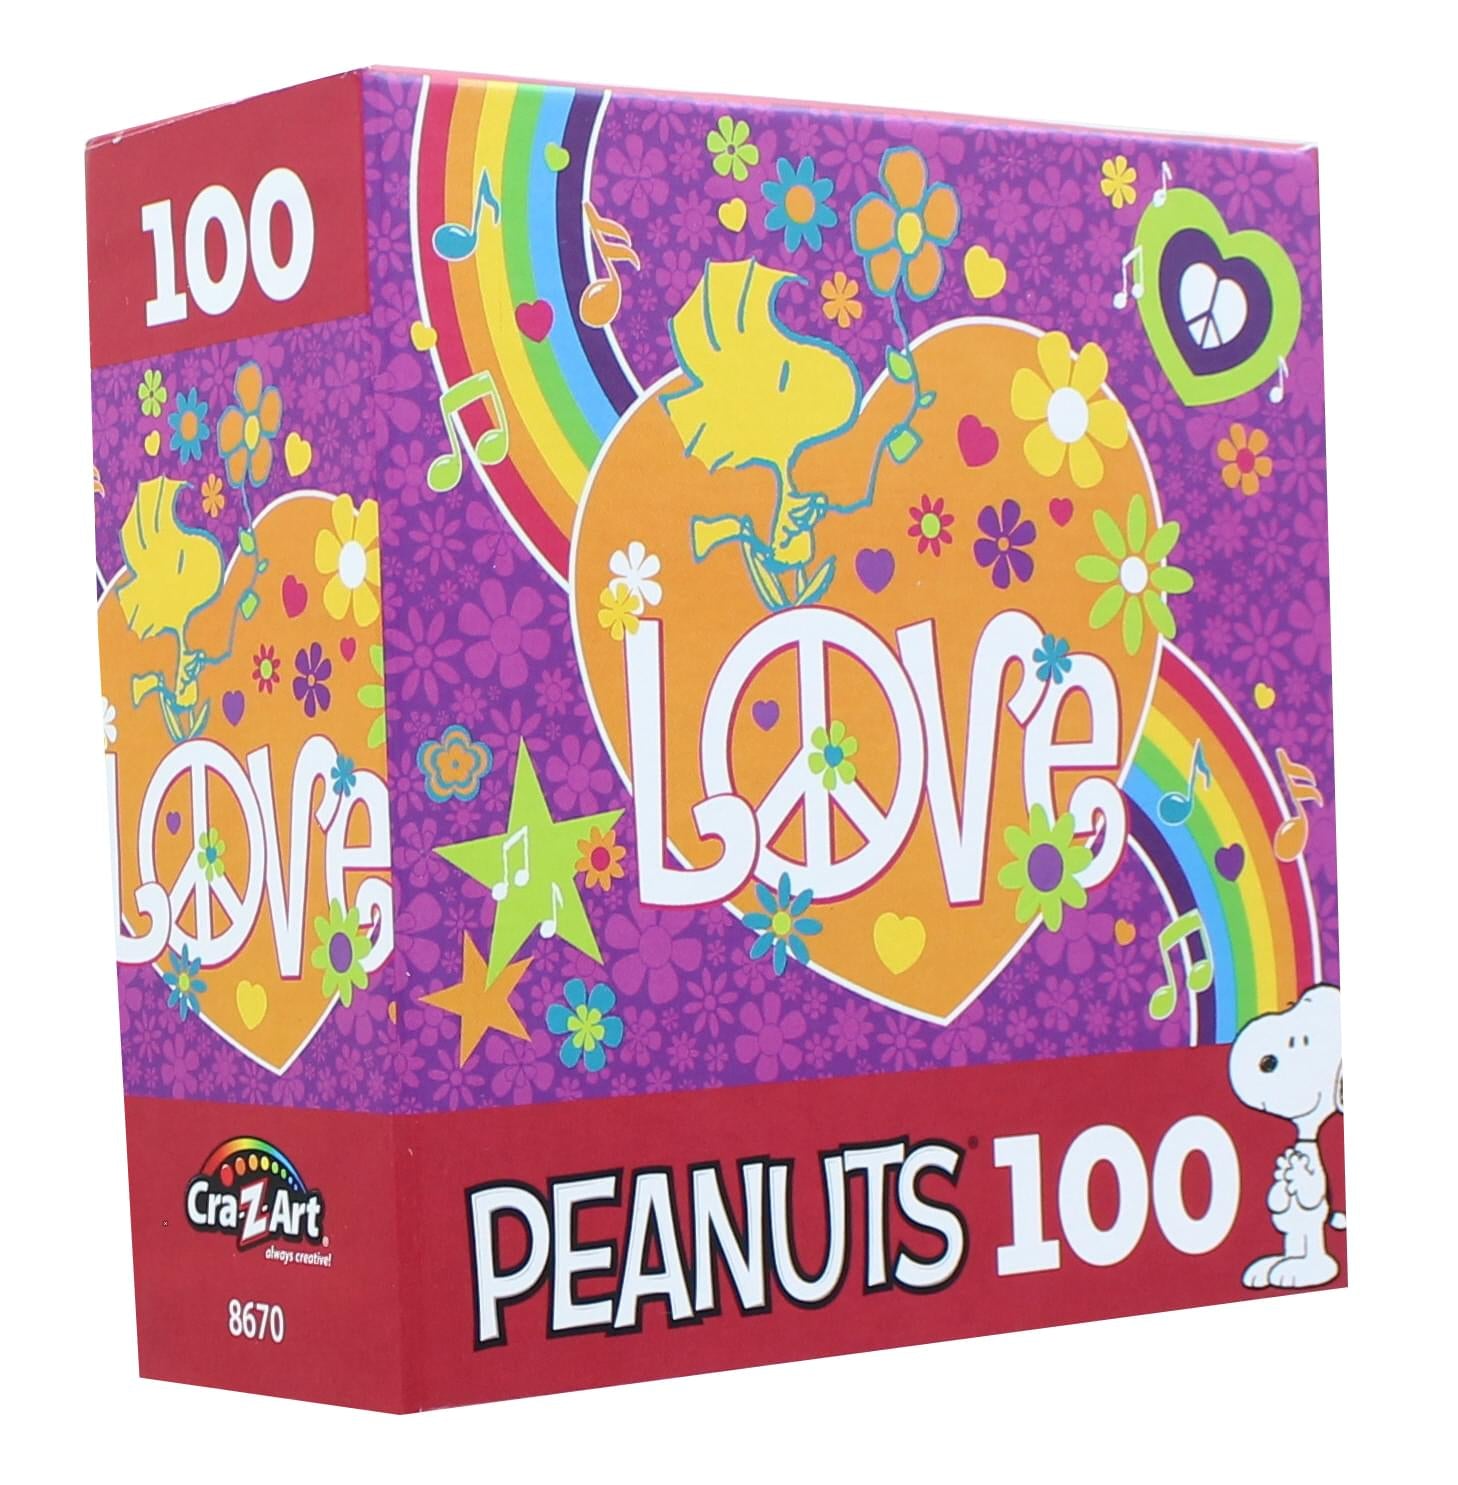 Peanuts 100 Piece Kids Jigsaw Puzzle | Woodstock Love